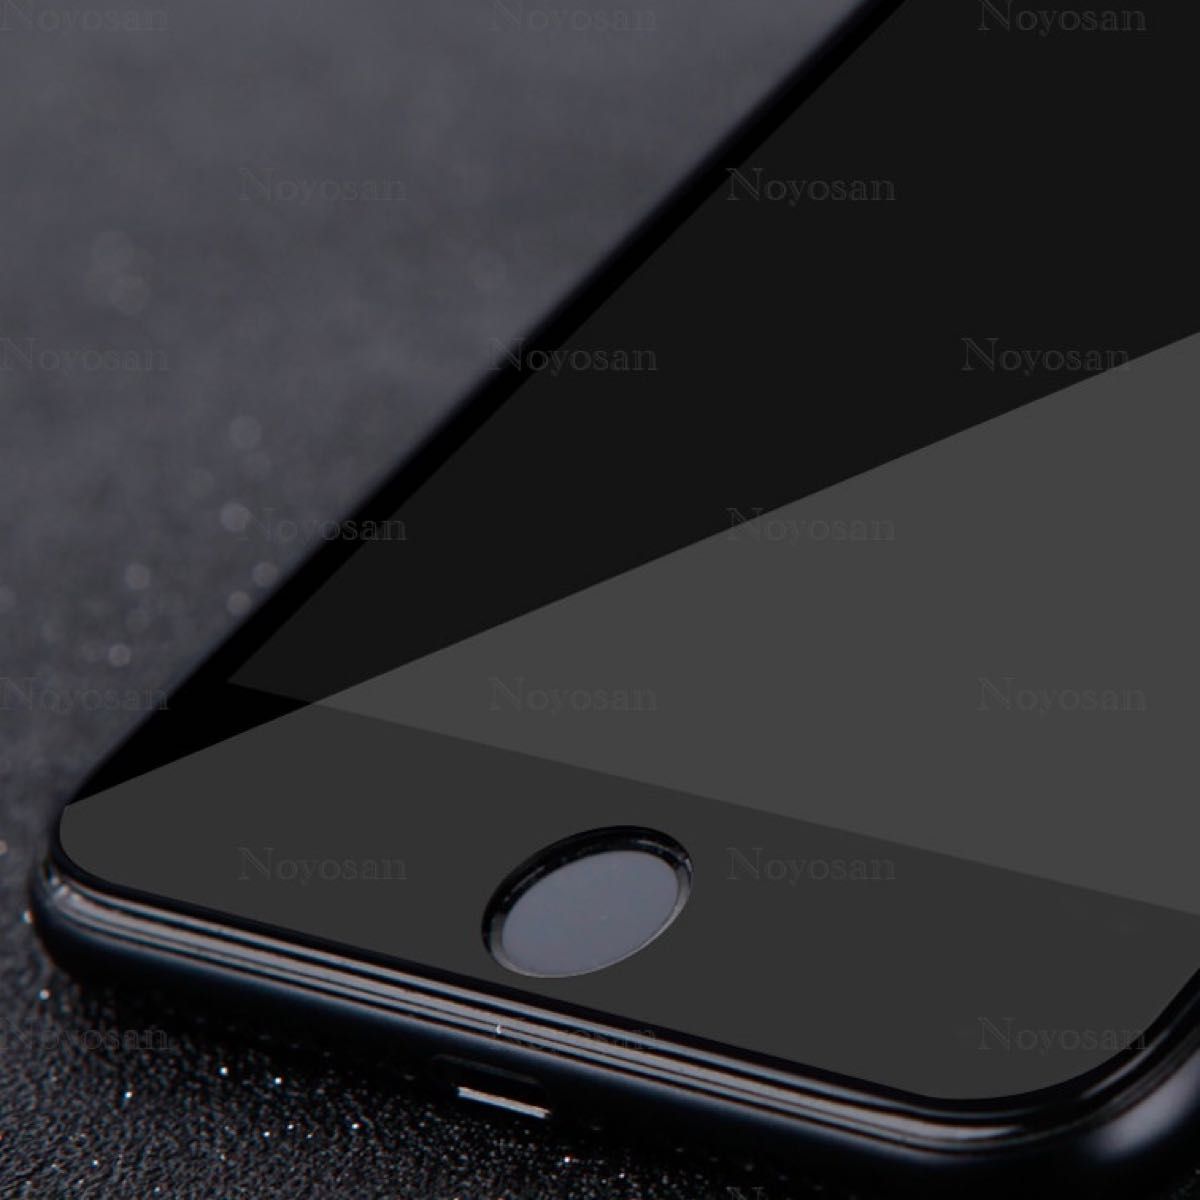 iPhone SE(第2世代) / iPhone SE(第3世代) 10D採用全面保護強化ガラスフィルム